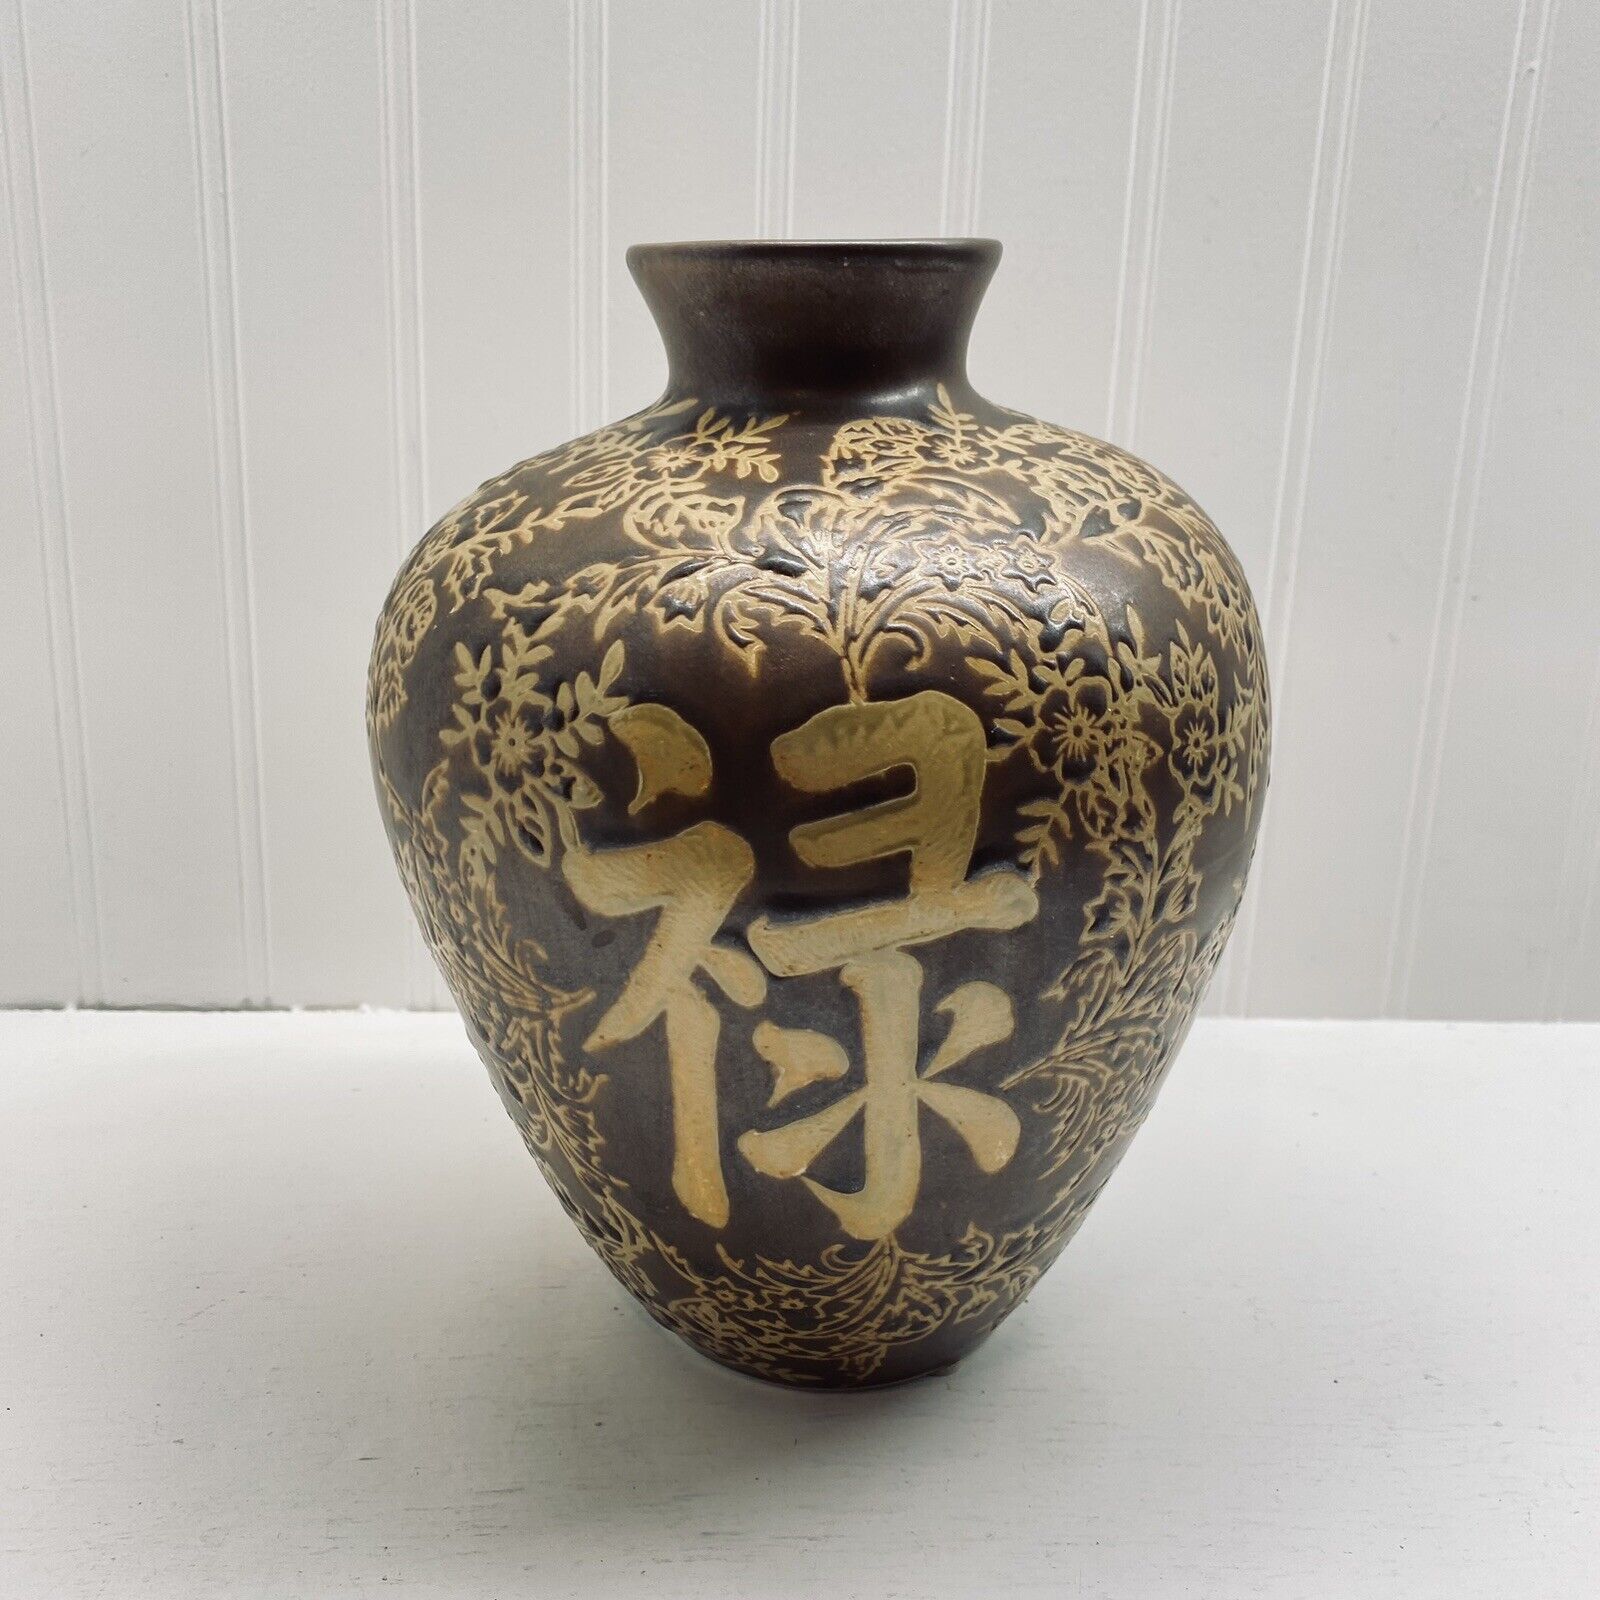 Vintage Asian Letters Motif Ceramic Vase Impressed Textured Brown